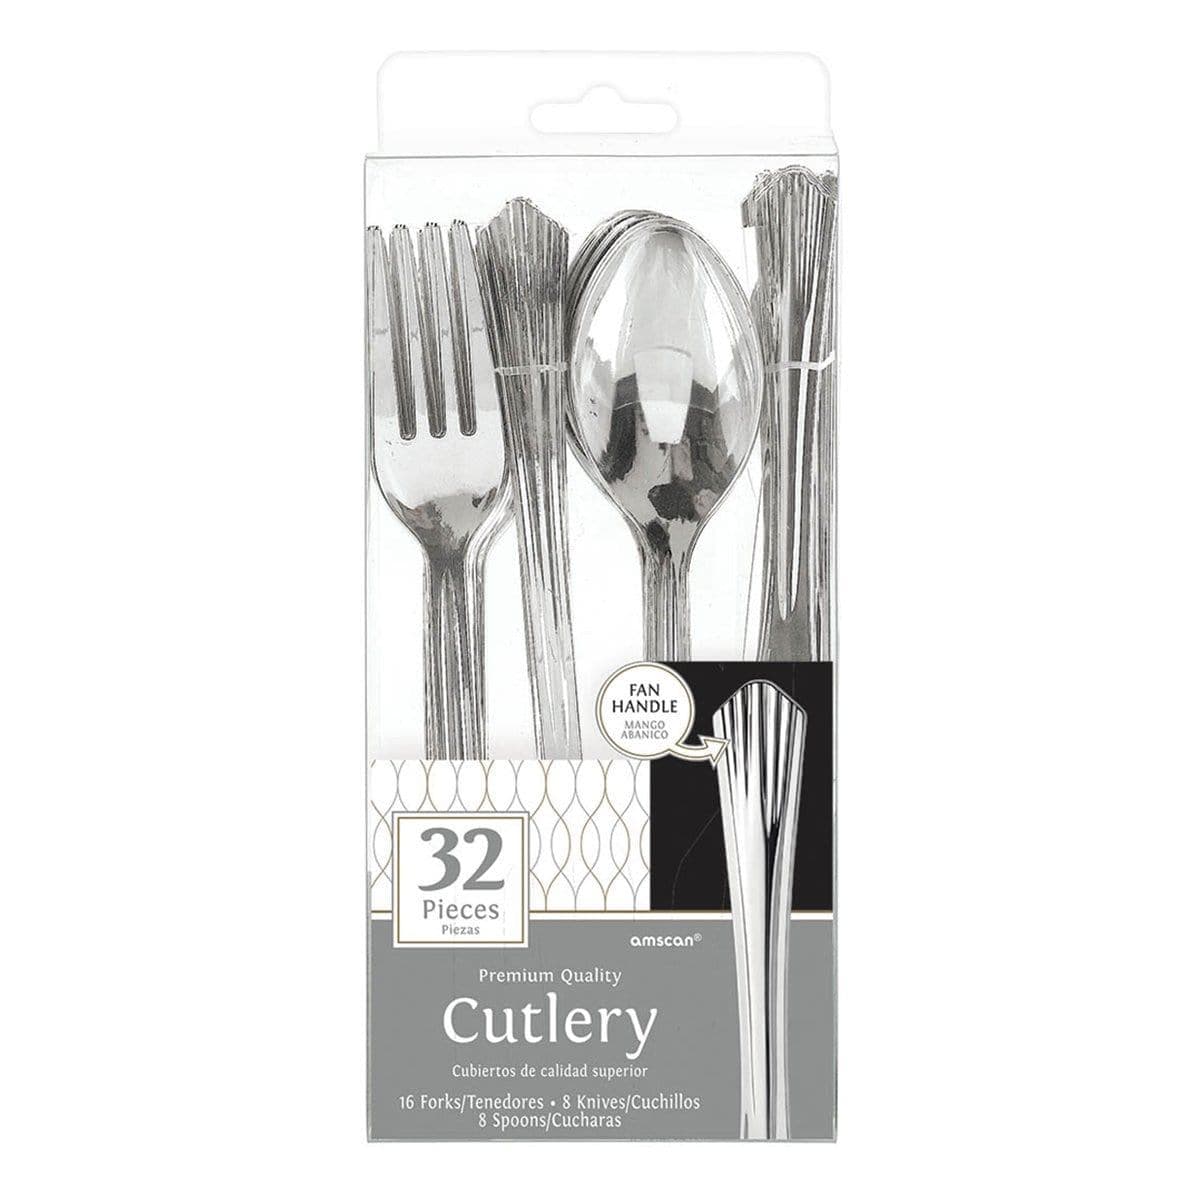 Fan Handled Assorted Cutlery - Silver 32/pkg